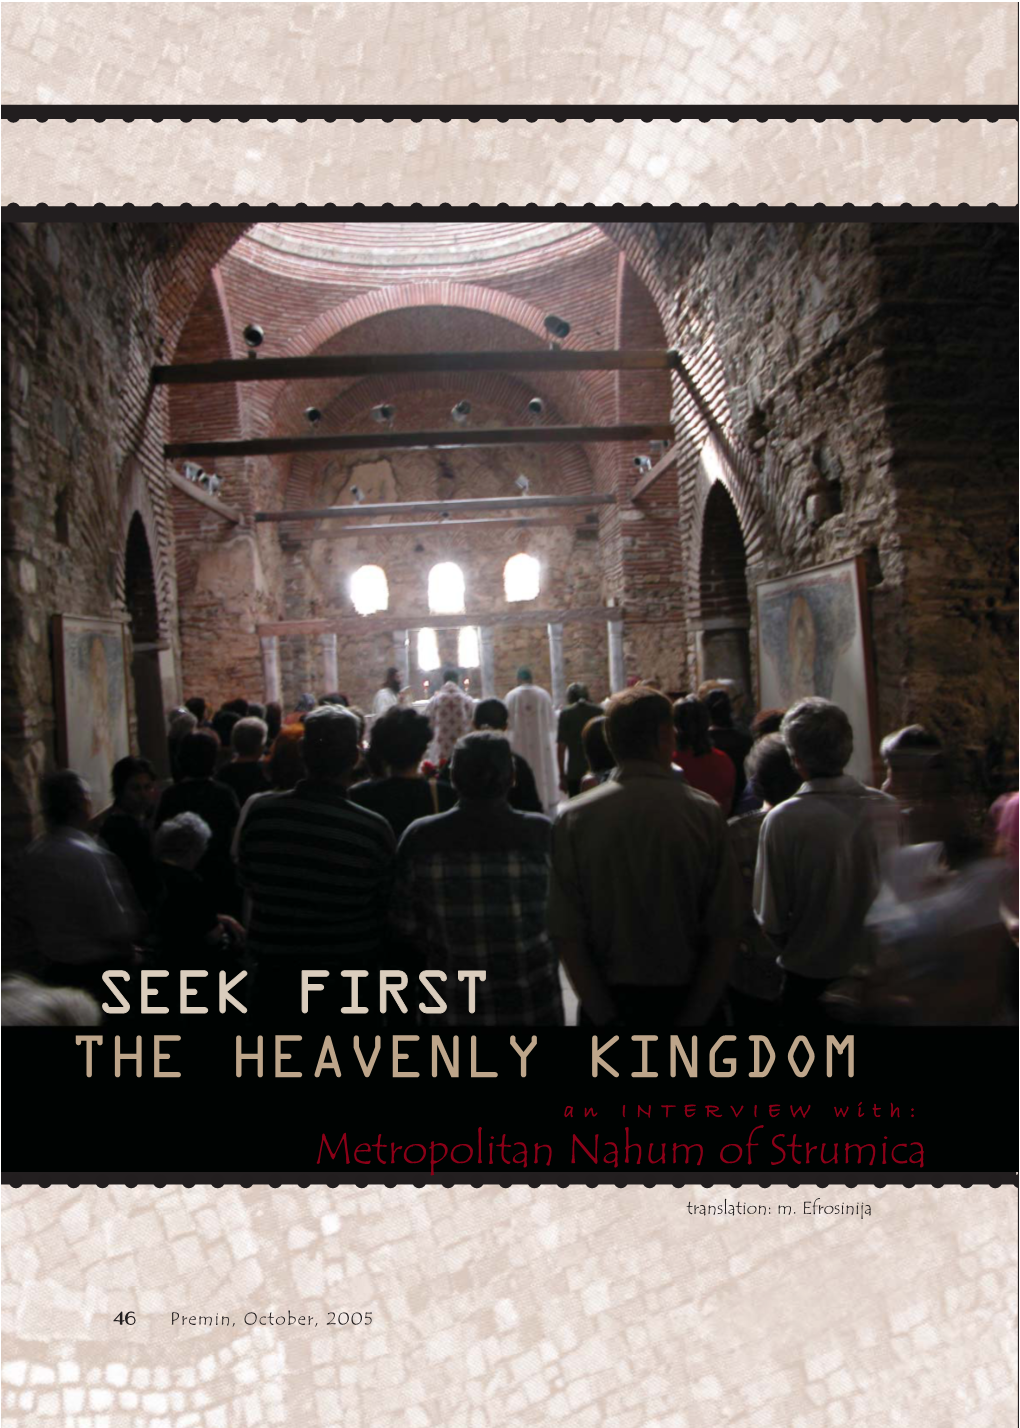 SEEK FIRST the HEAVENLY KINGDOM a N I N T E R V I E W W I T H : Metropolitan Nahum of Strumica